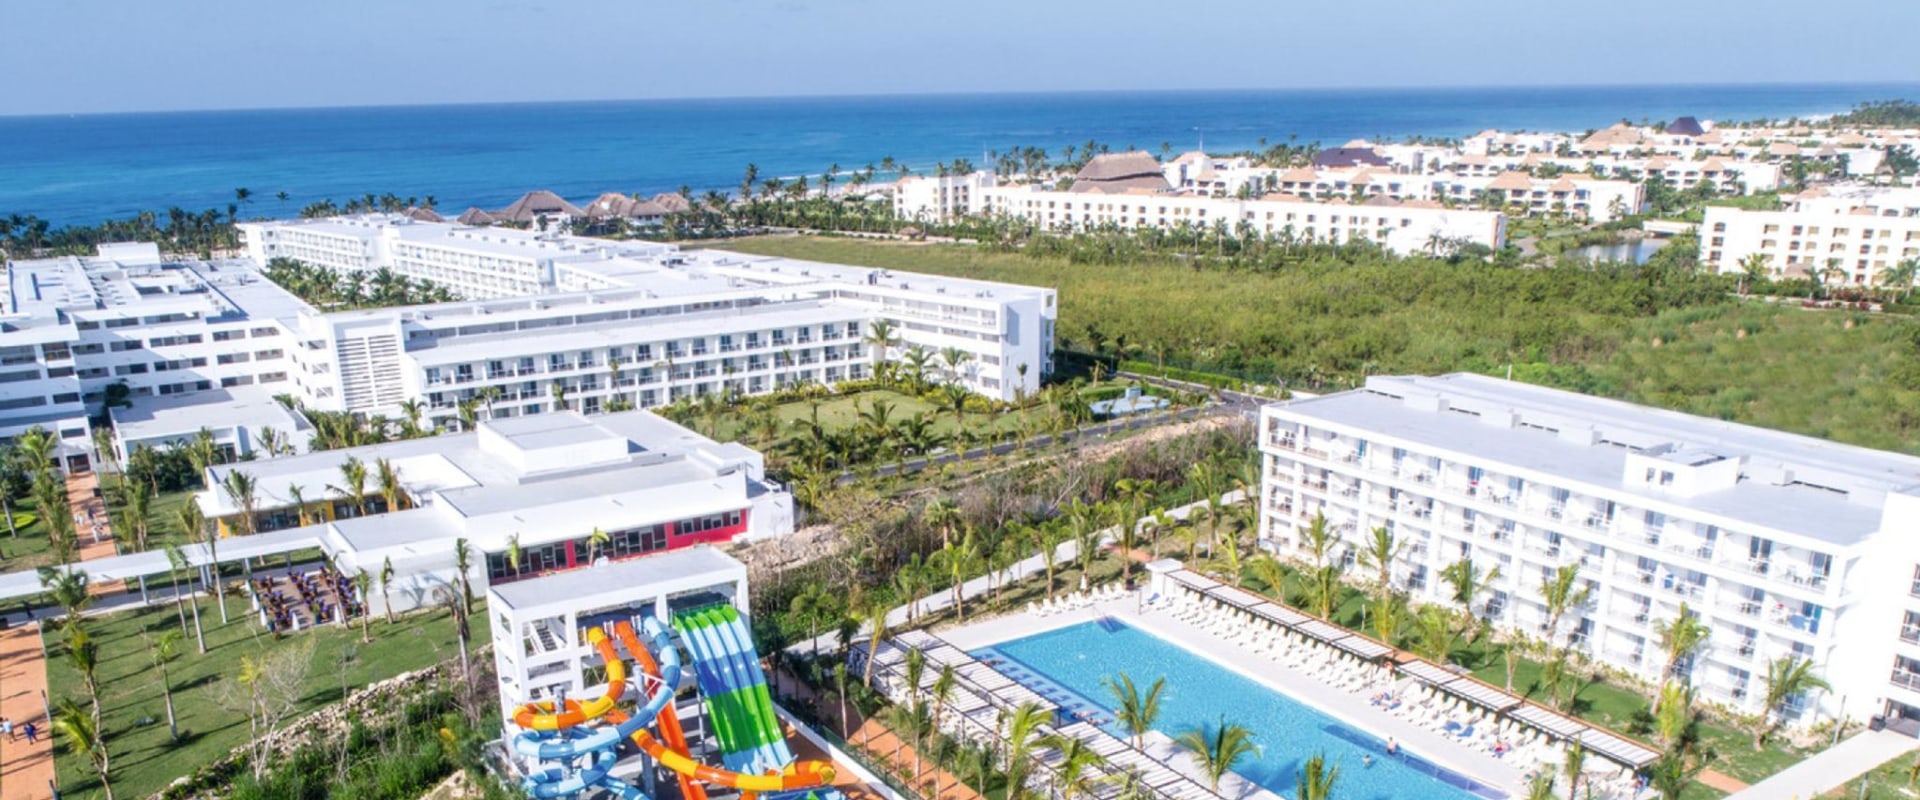 The Best Adults-Only Resort in Punta Cana: Riu Republica